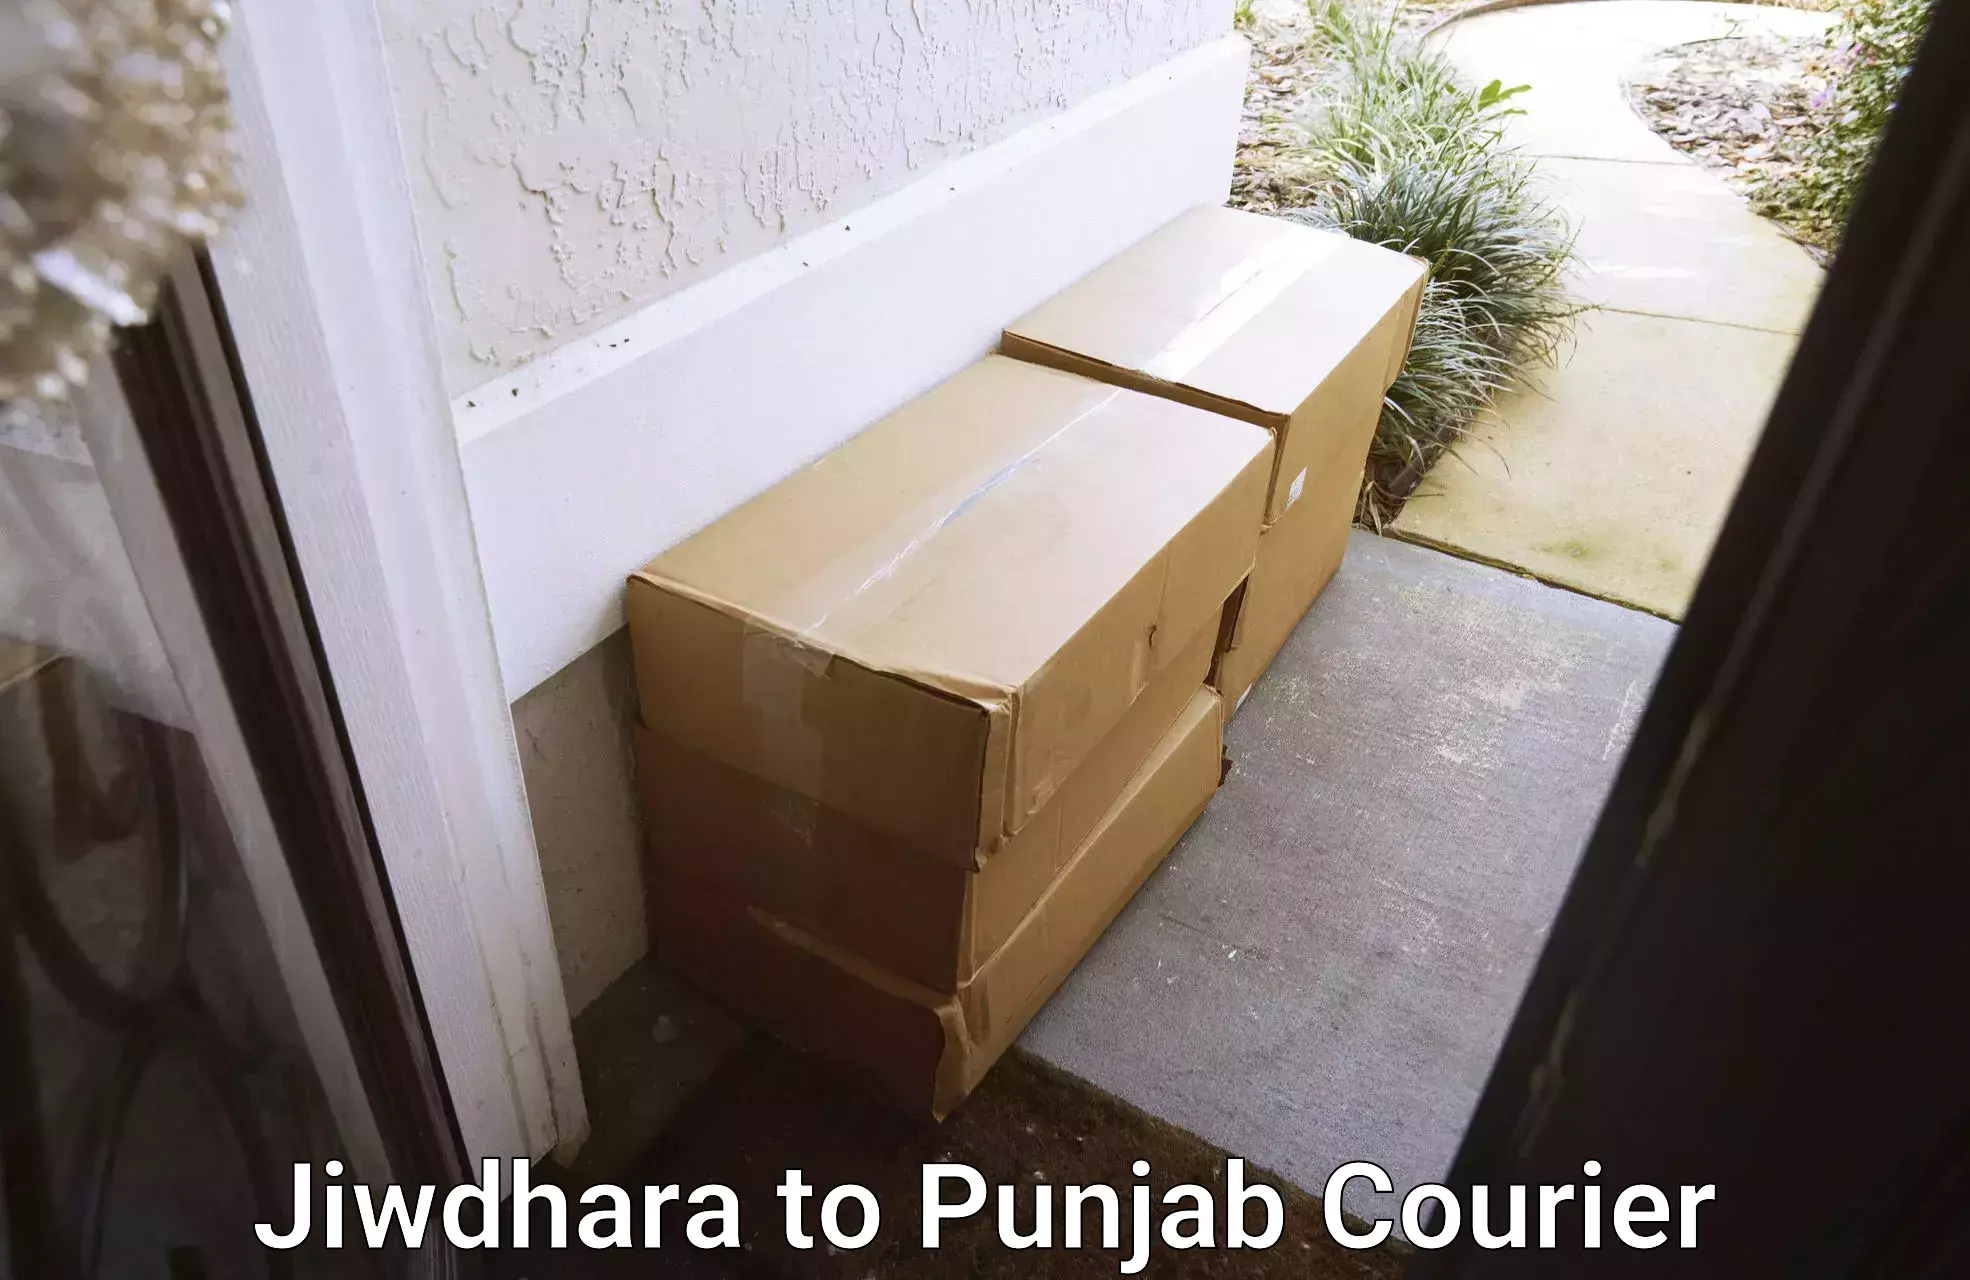 Furniture moving plans Jiwdhara to Punjab